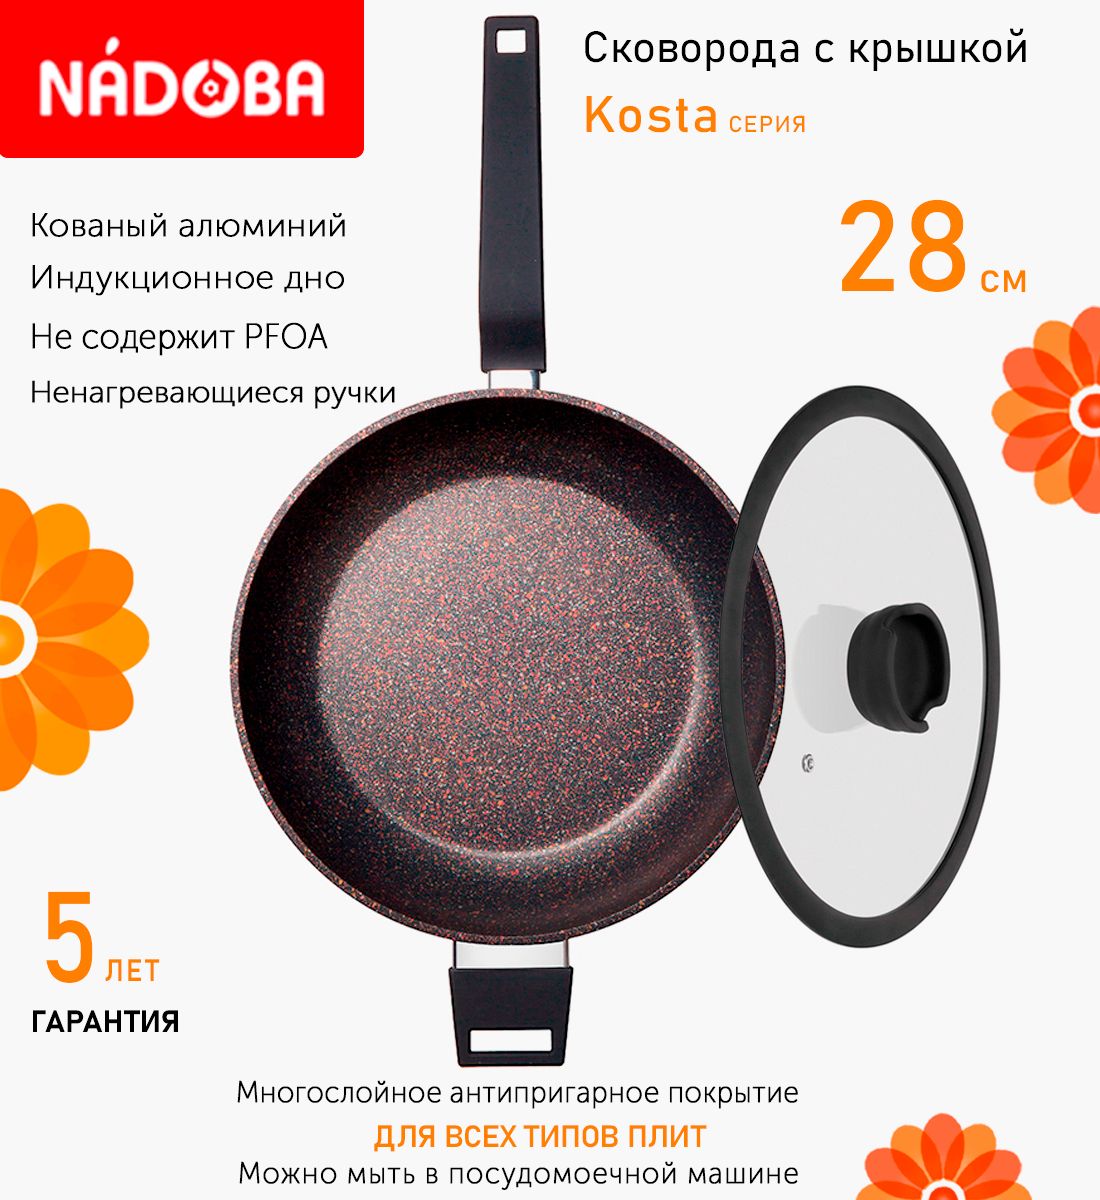 Сковорода глубокая с крышкой NADOBA 28 см серия Kosta